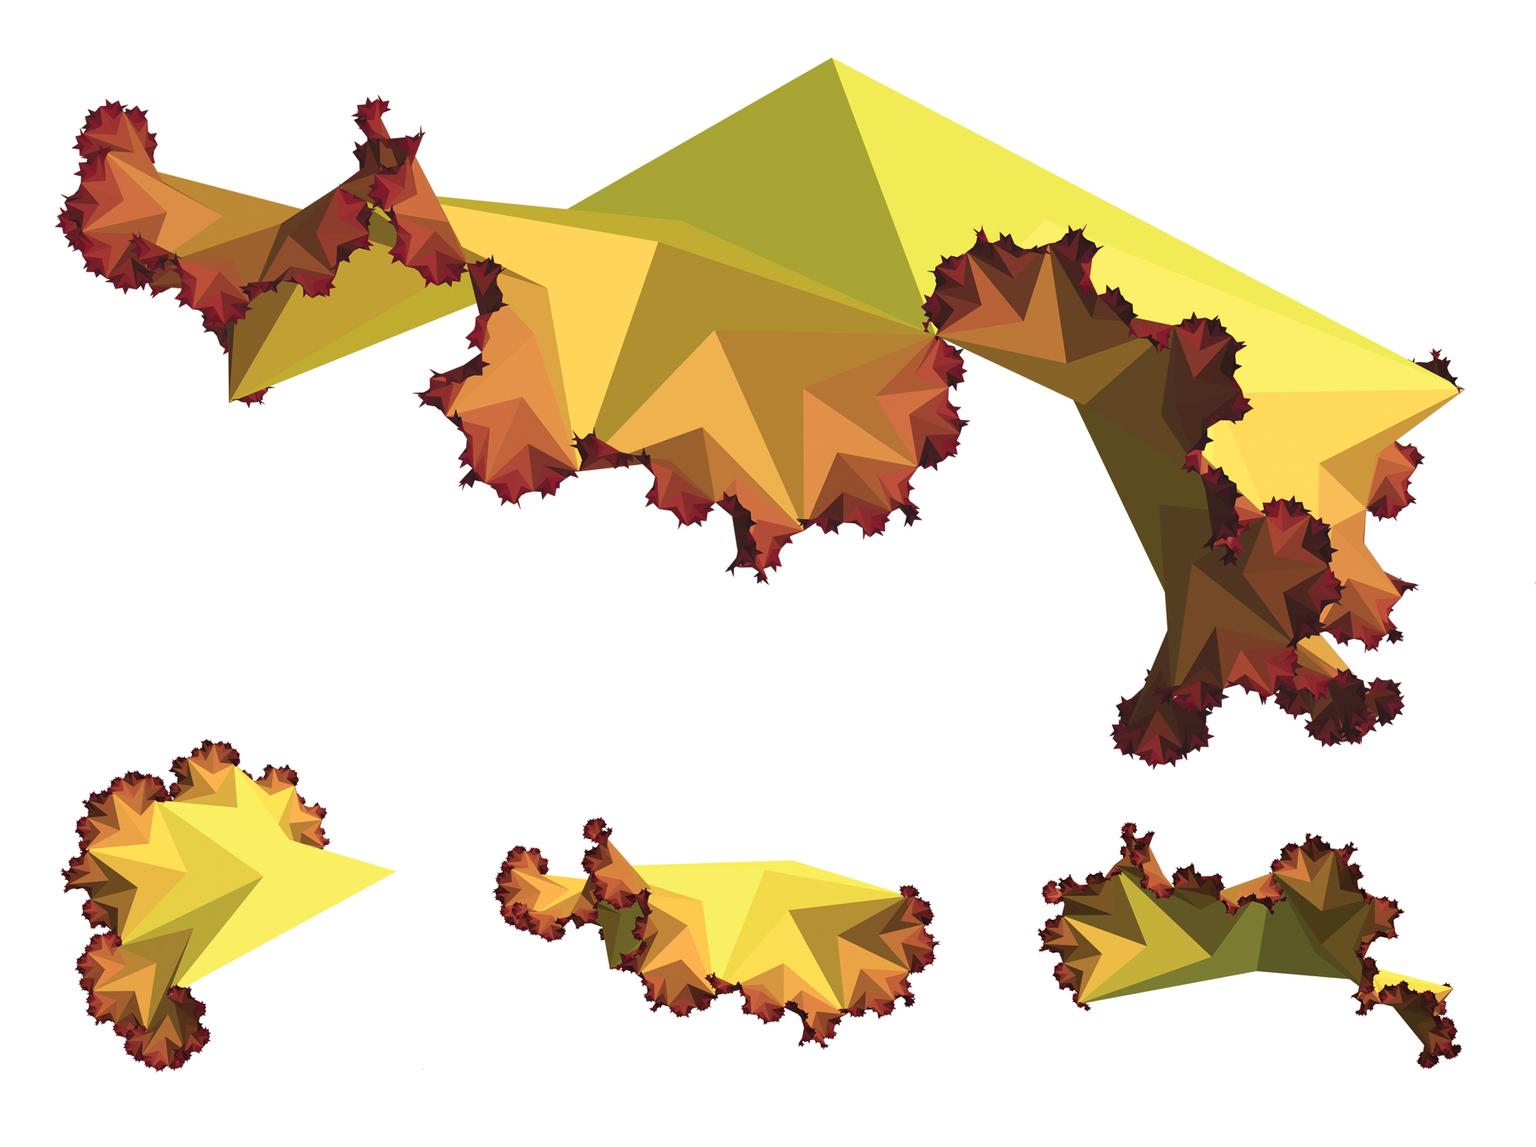 Image for entry 'Hyperbolic Fractal Tiling No. 1'